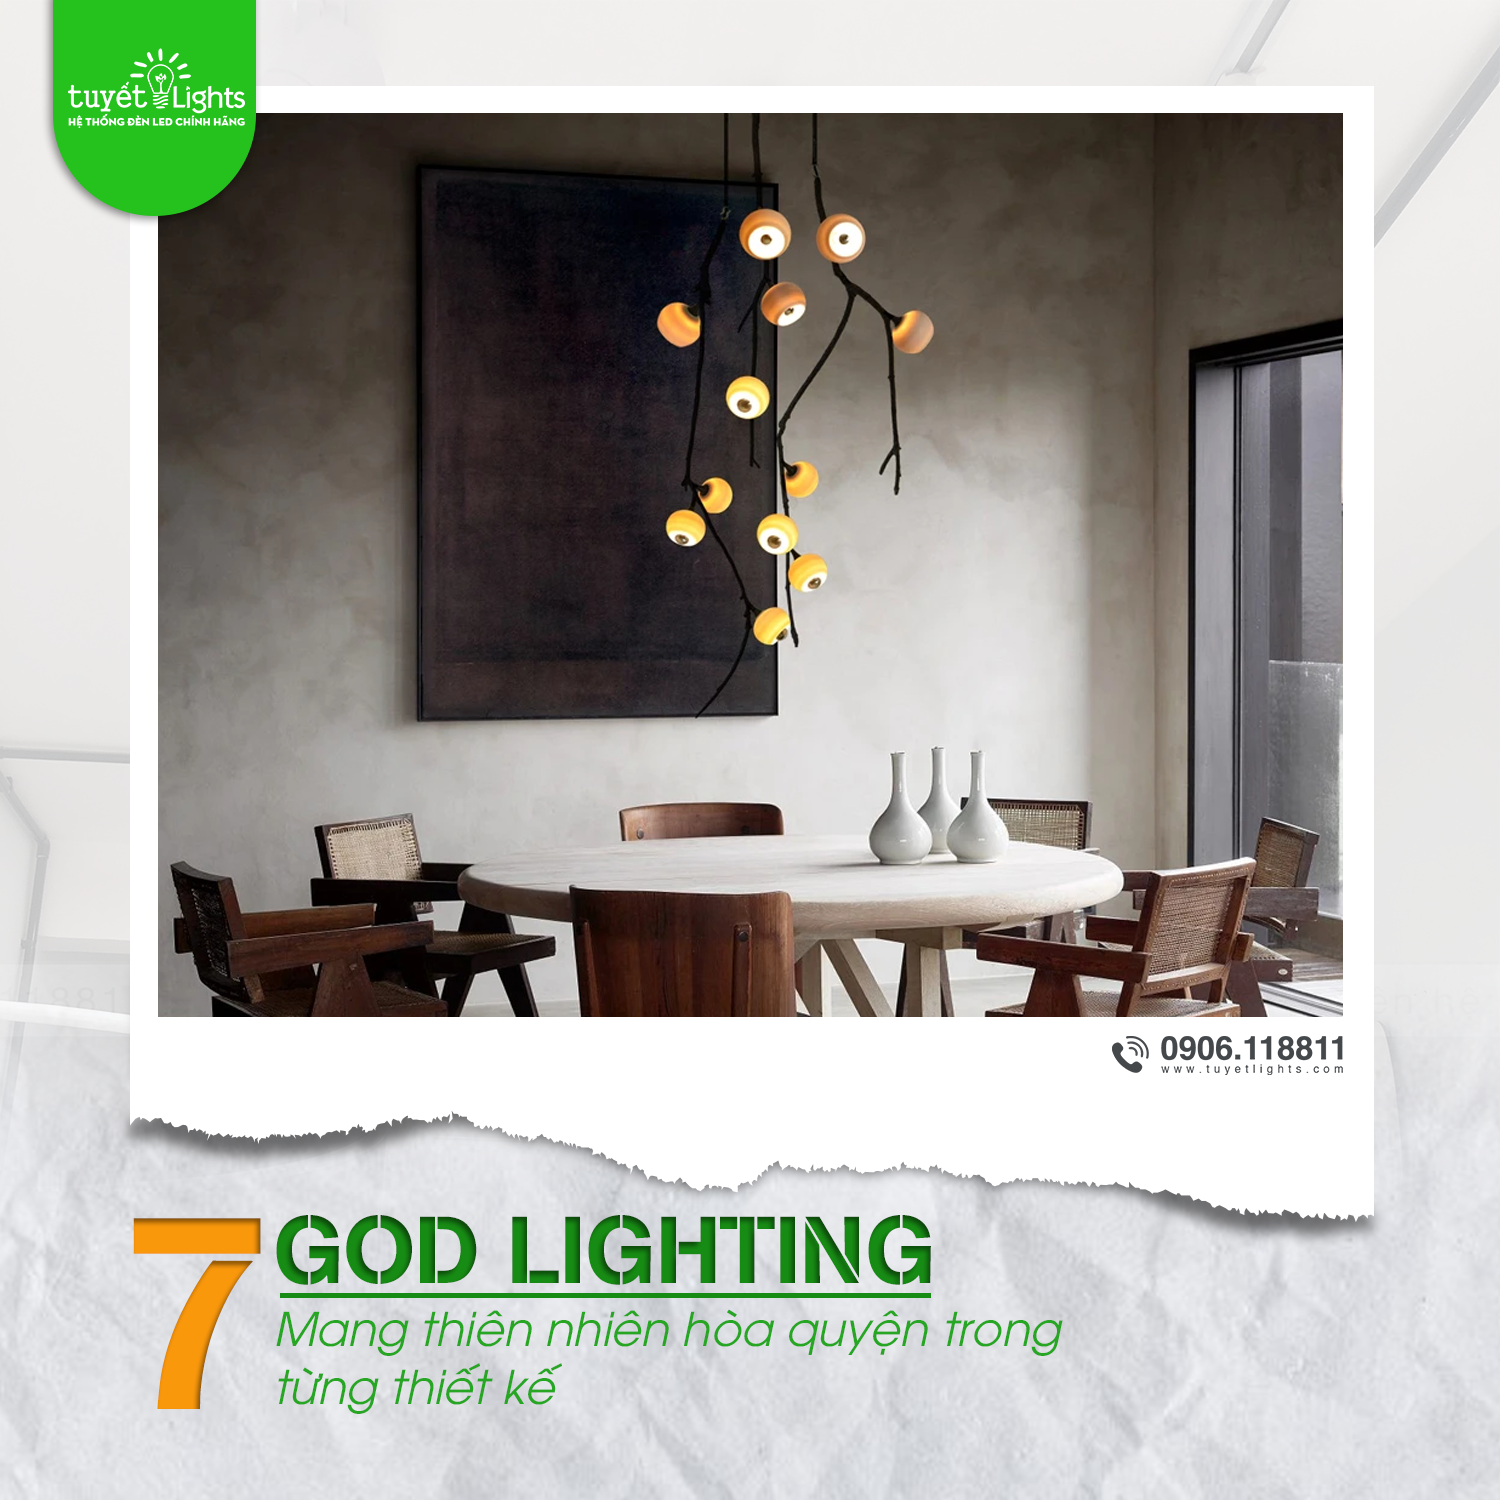 7 God Lighting - Mang thiên nhiên hòa quyện trong từng thiết kế